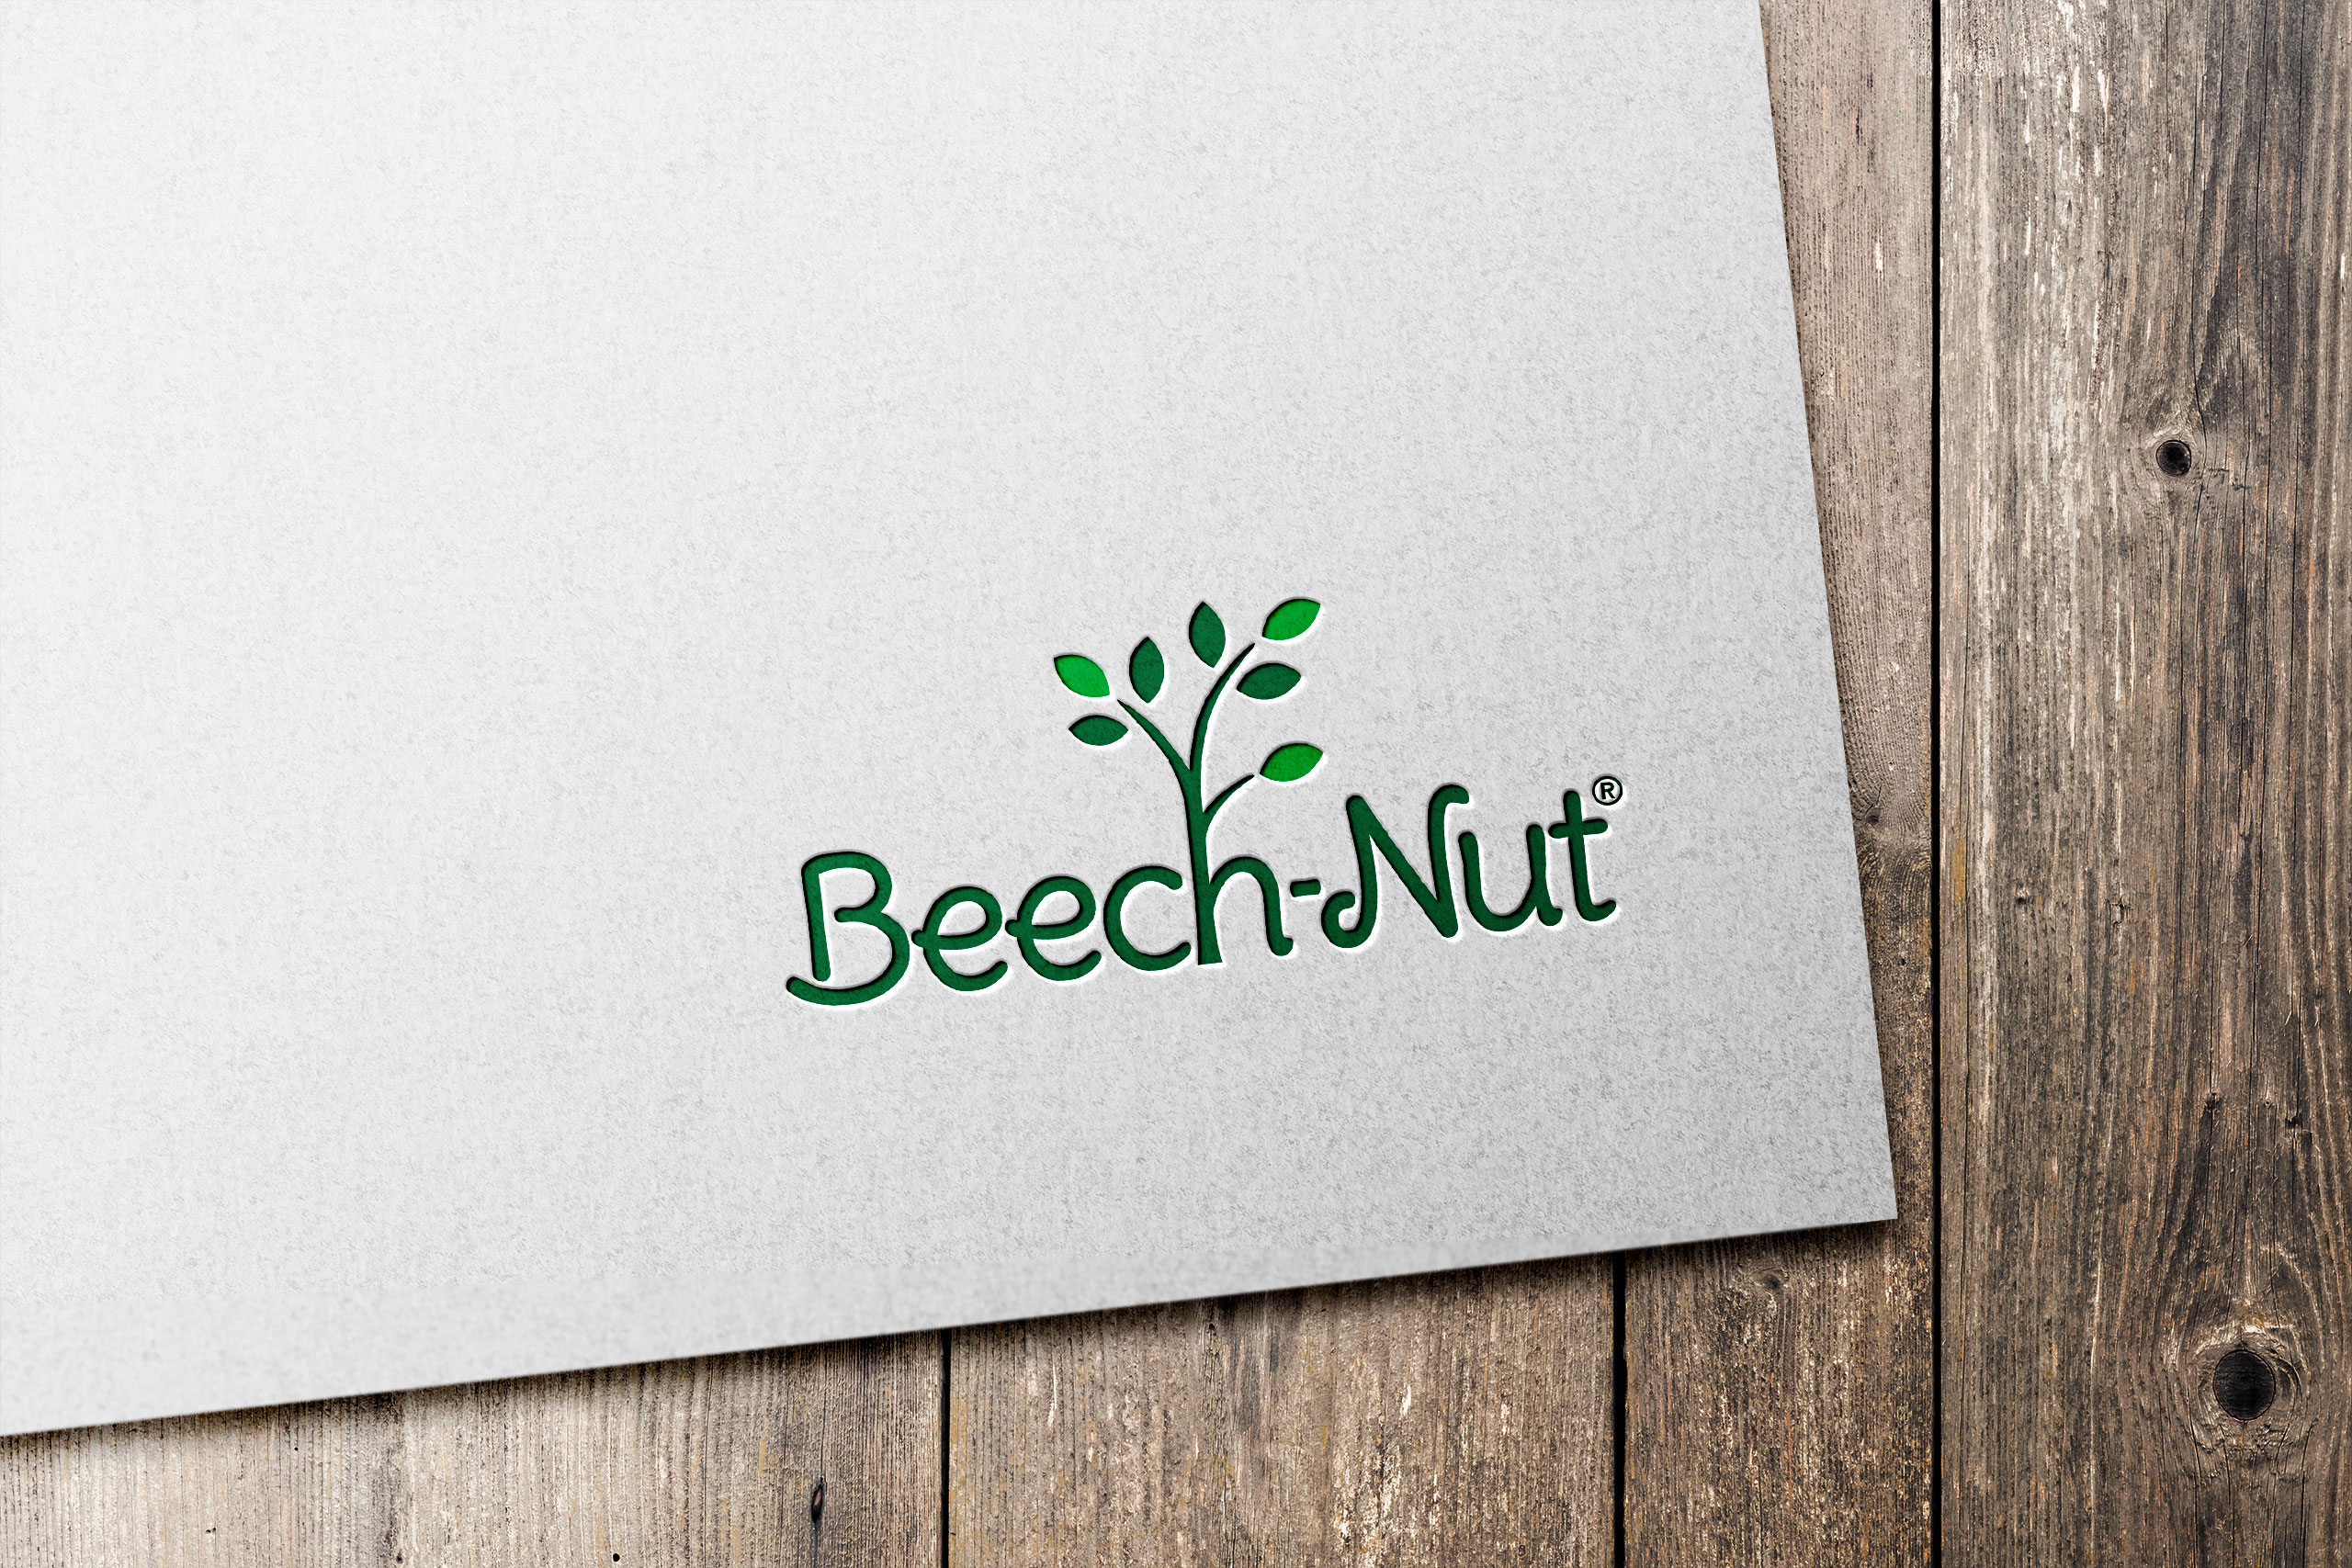 Beech-Nut